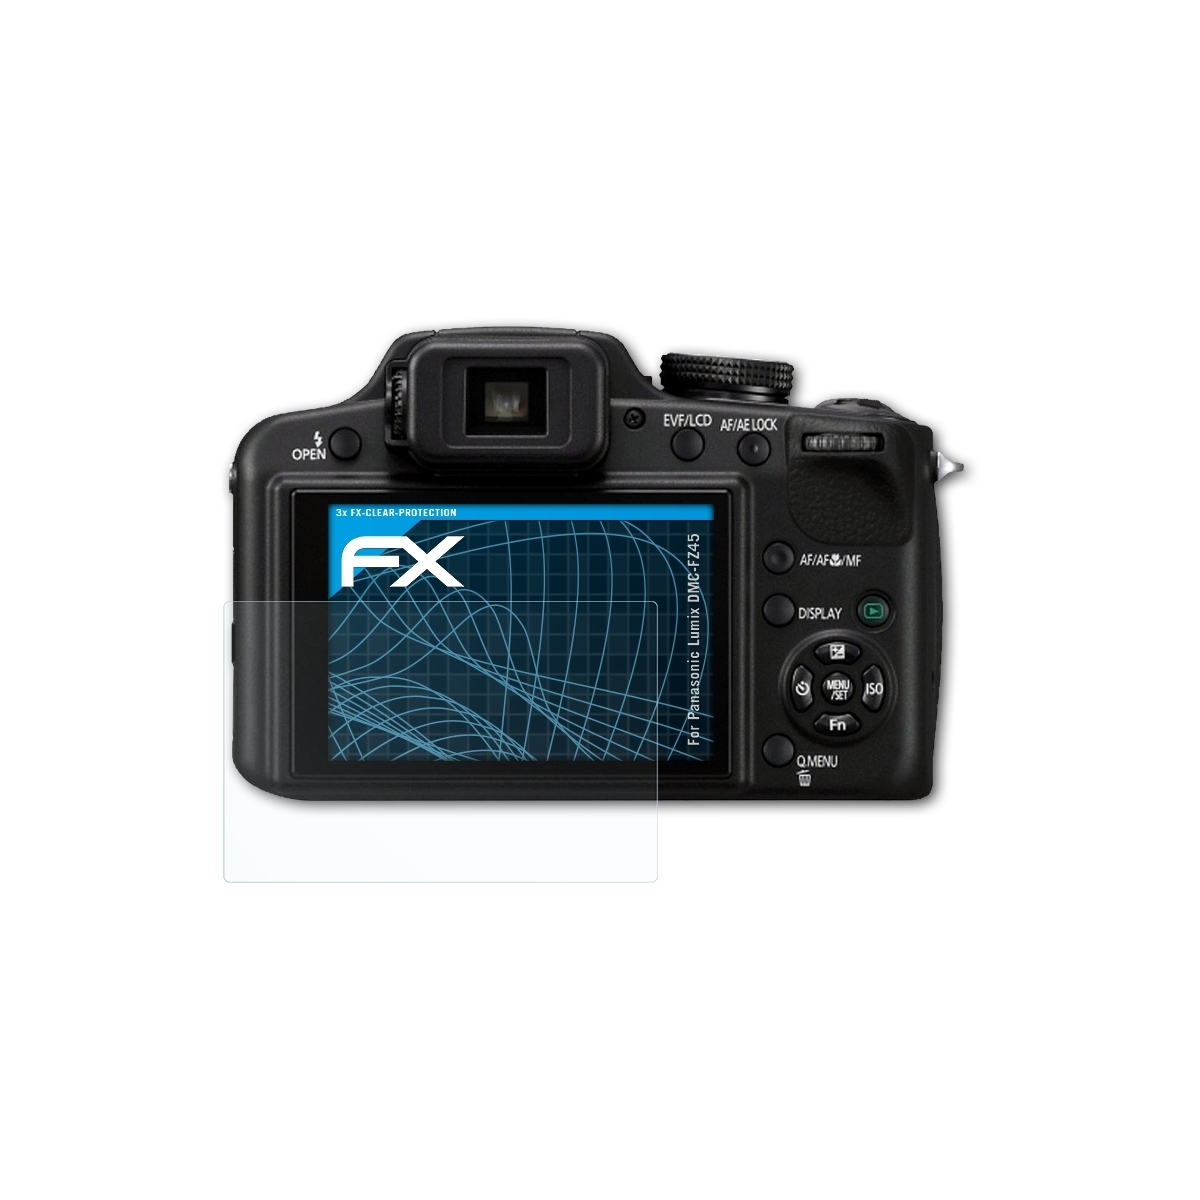 Panasonic ATFOLIX Displayschutz(für FX-Clear Lumix 3x DMC-FZ45)